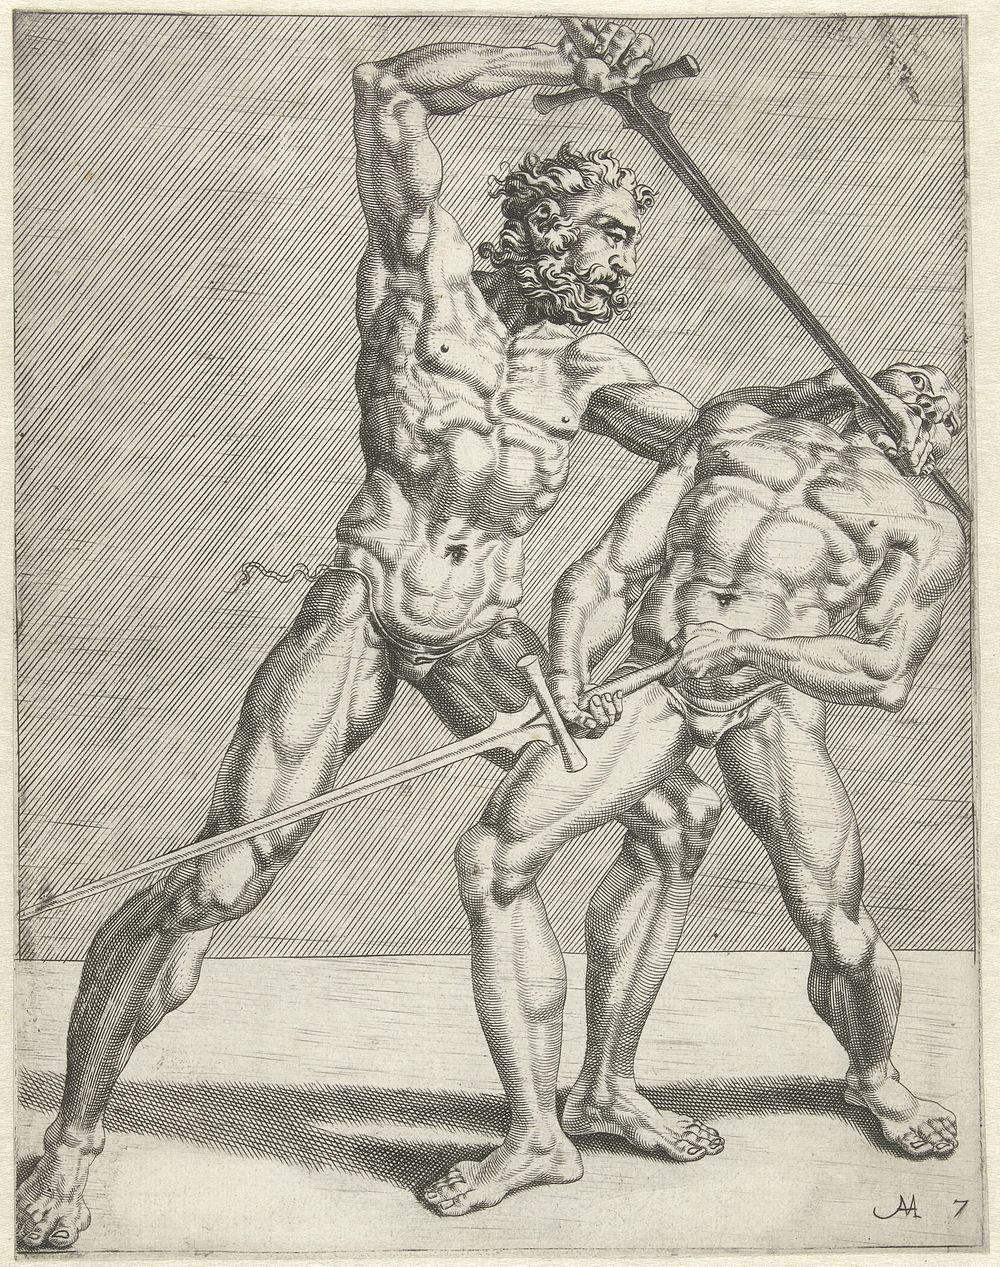 Twee zwaardvechters (1552) by Cornelis Bos, Dirck Volckertsz Coornhert and Maarten van Heemskerck